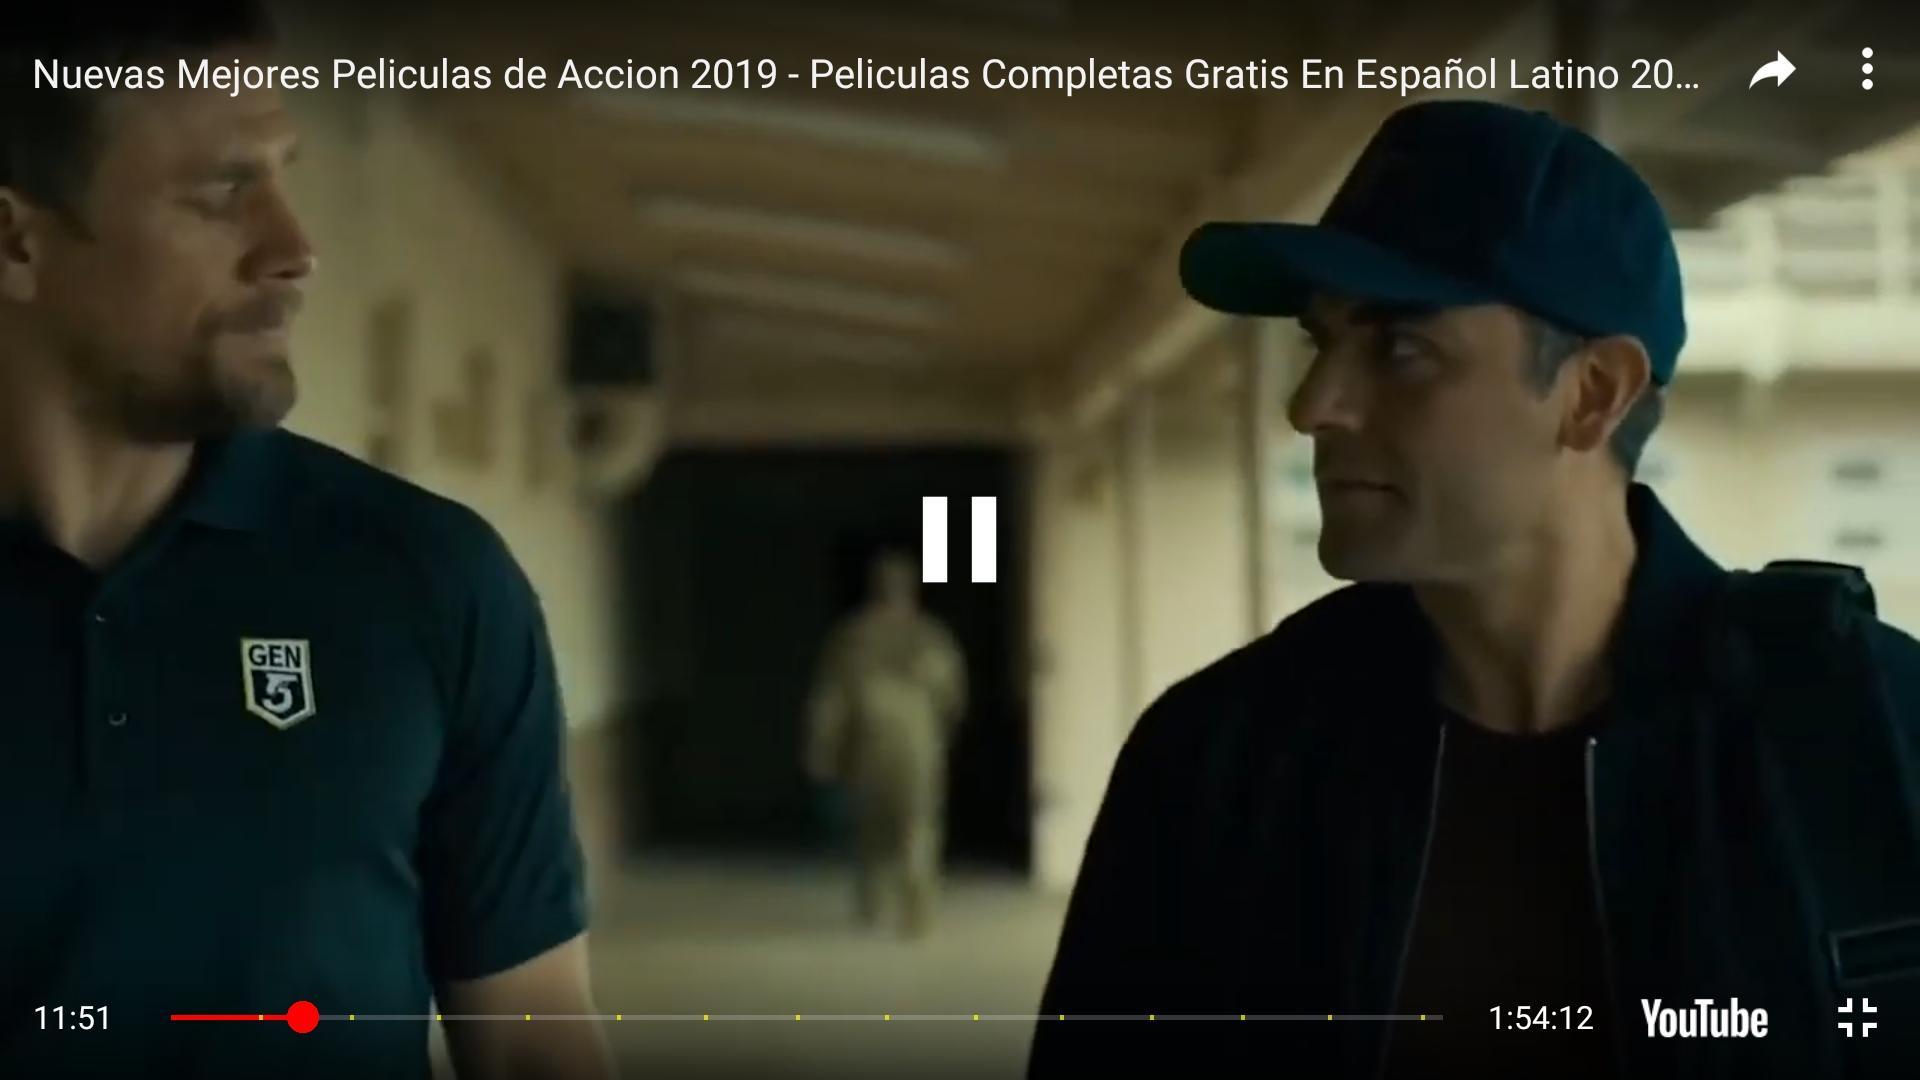 Películas Gratis en Español Latino Completas for Android - APK Download